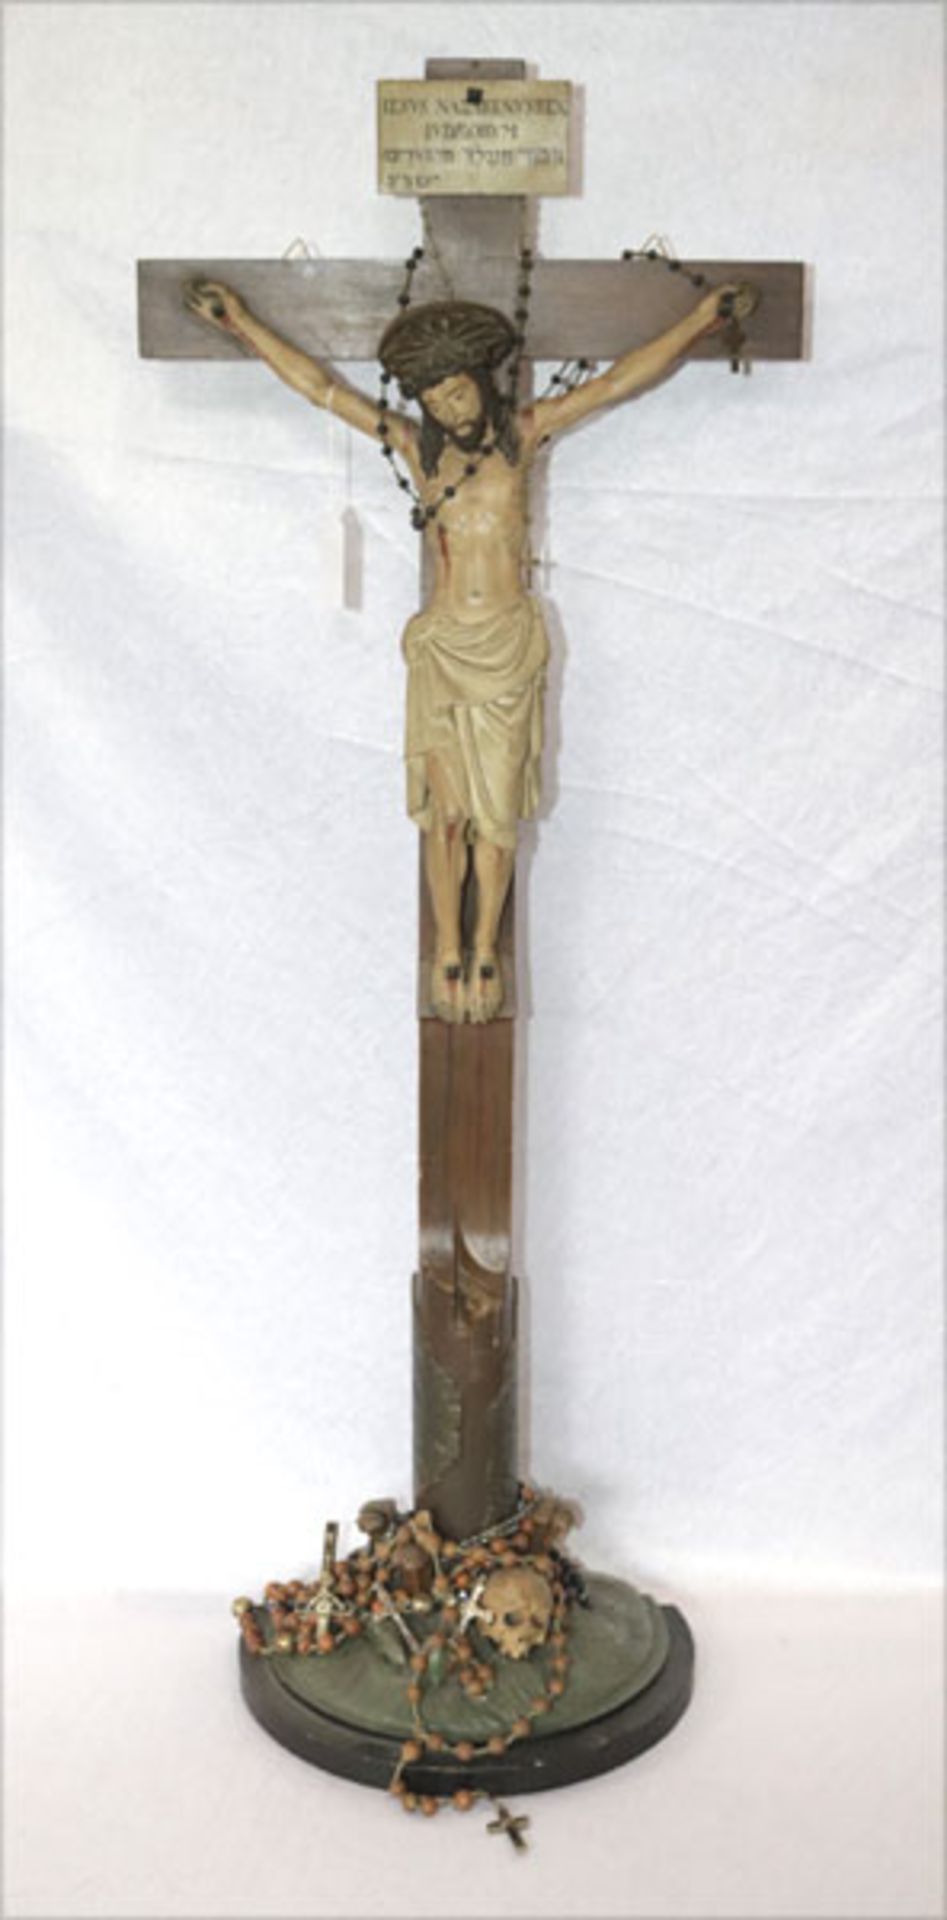 Holz Standkreuz mit Korpus Christi, am Sockel Totenkopf und Schlange, H 85 cm, B 33 cm, mit diversen